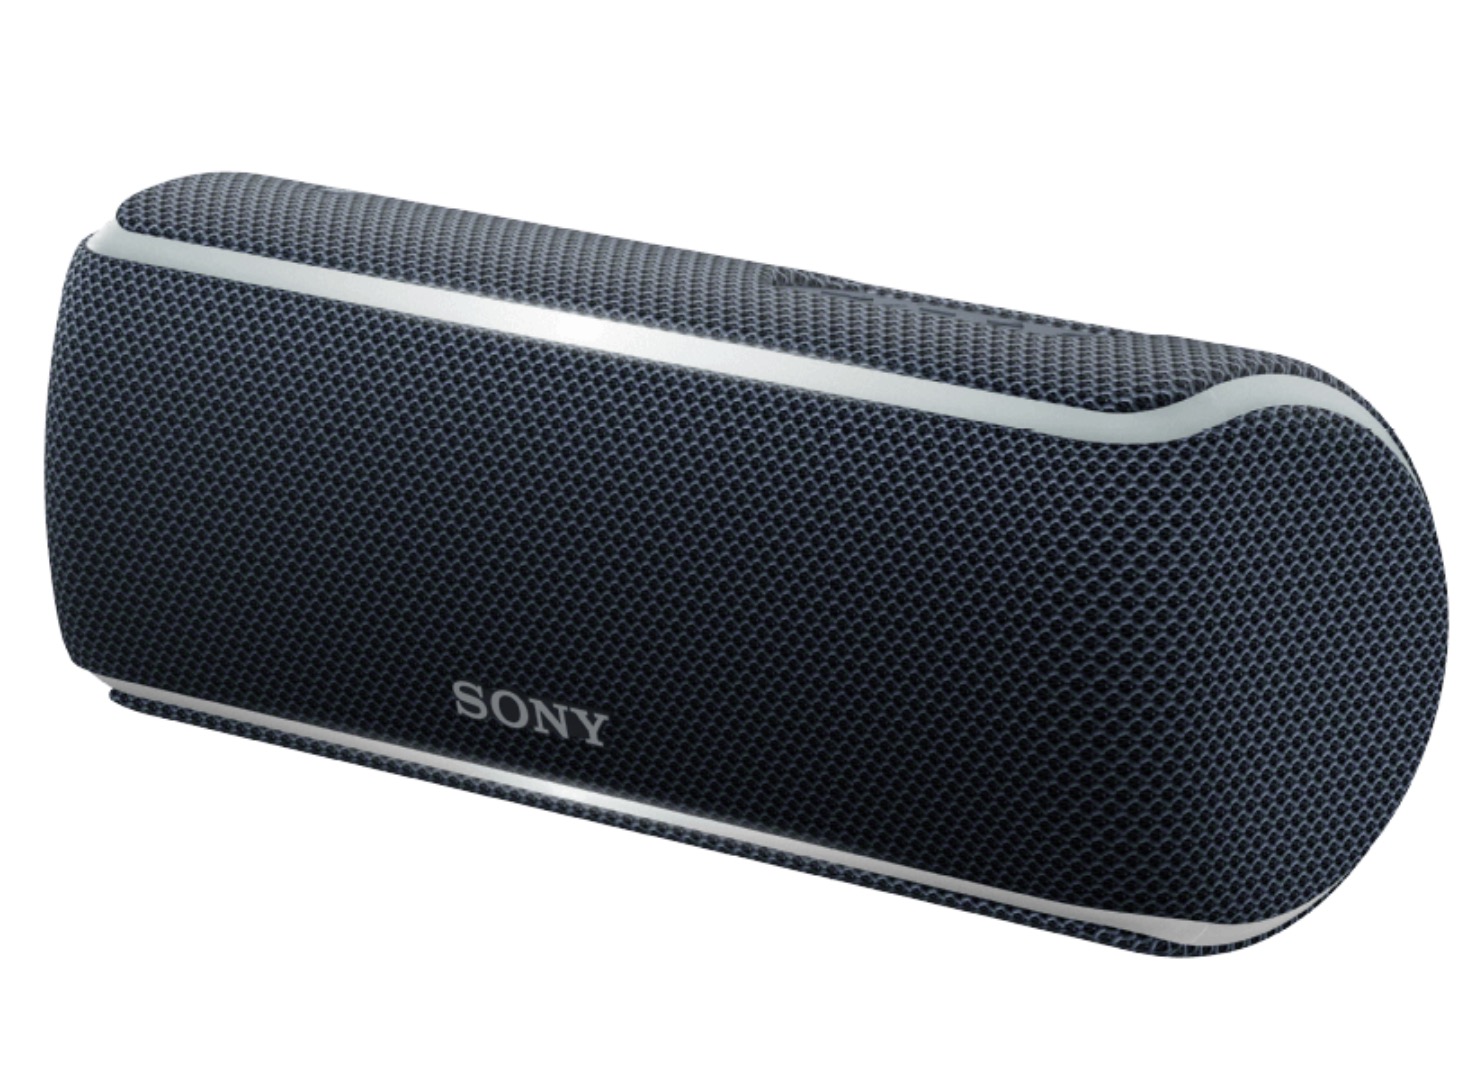 SONY SRS-XB21 Bluetooth Lautsprecher in verschiedenen Farben für nur 49,- Euro inkl. Versand